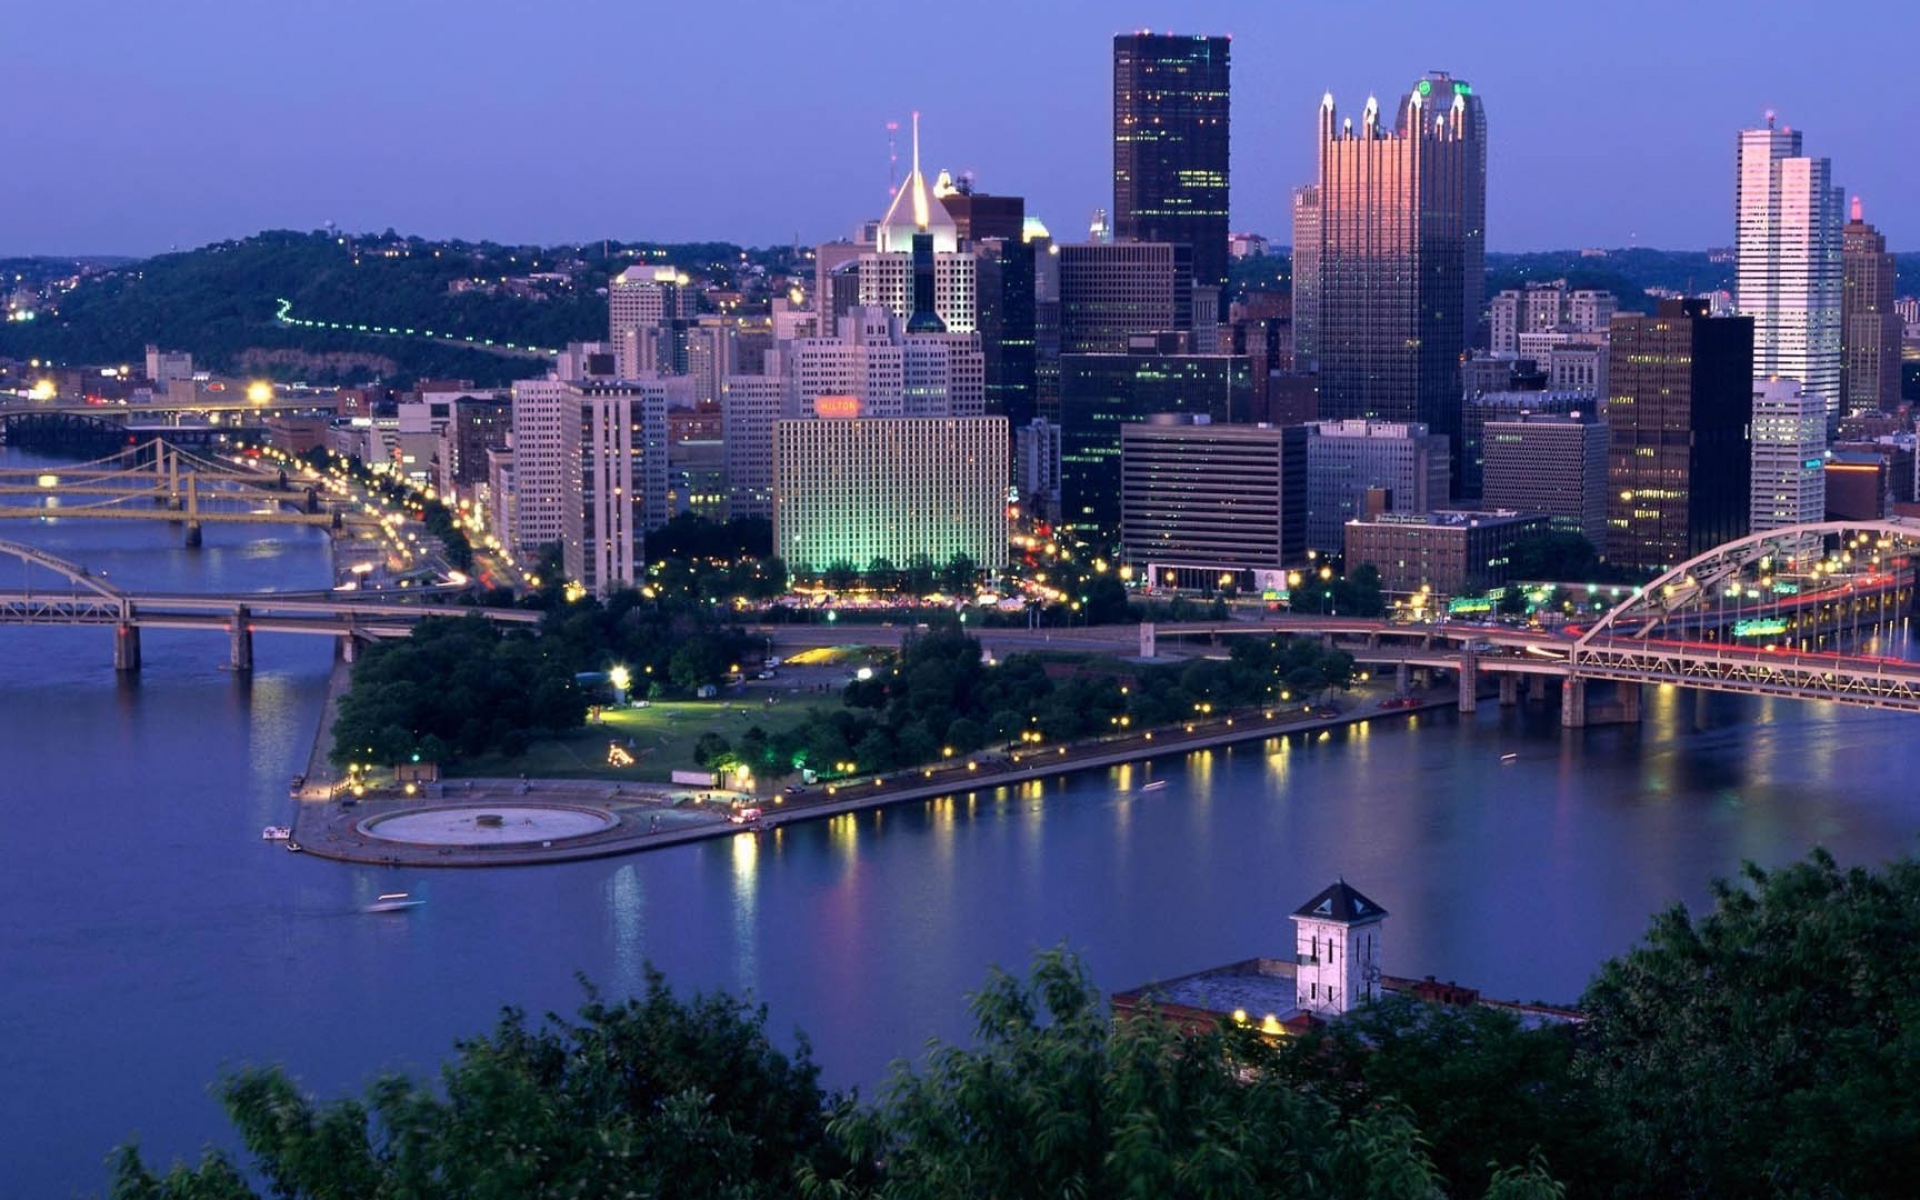 Картинки Пенсильвания, Питсбург, небоскребы, ночь, река, мост фото и обои на рабочий стол